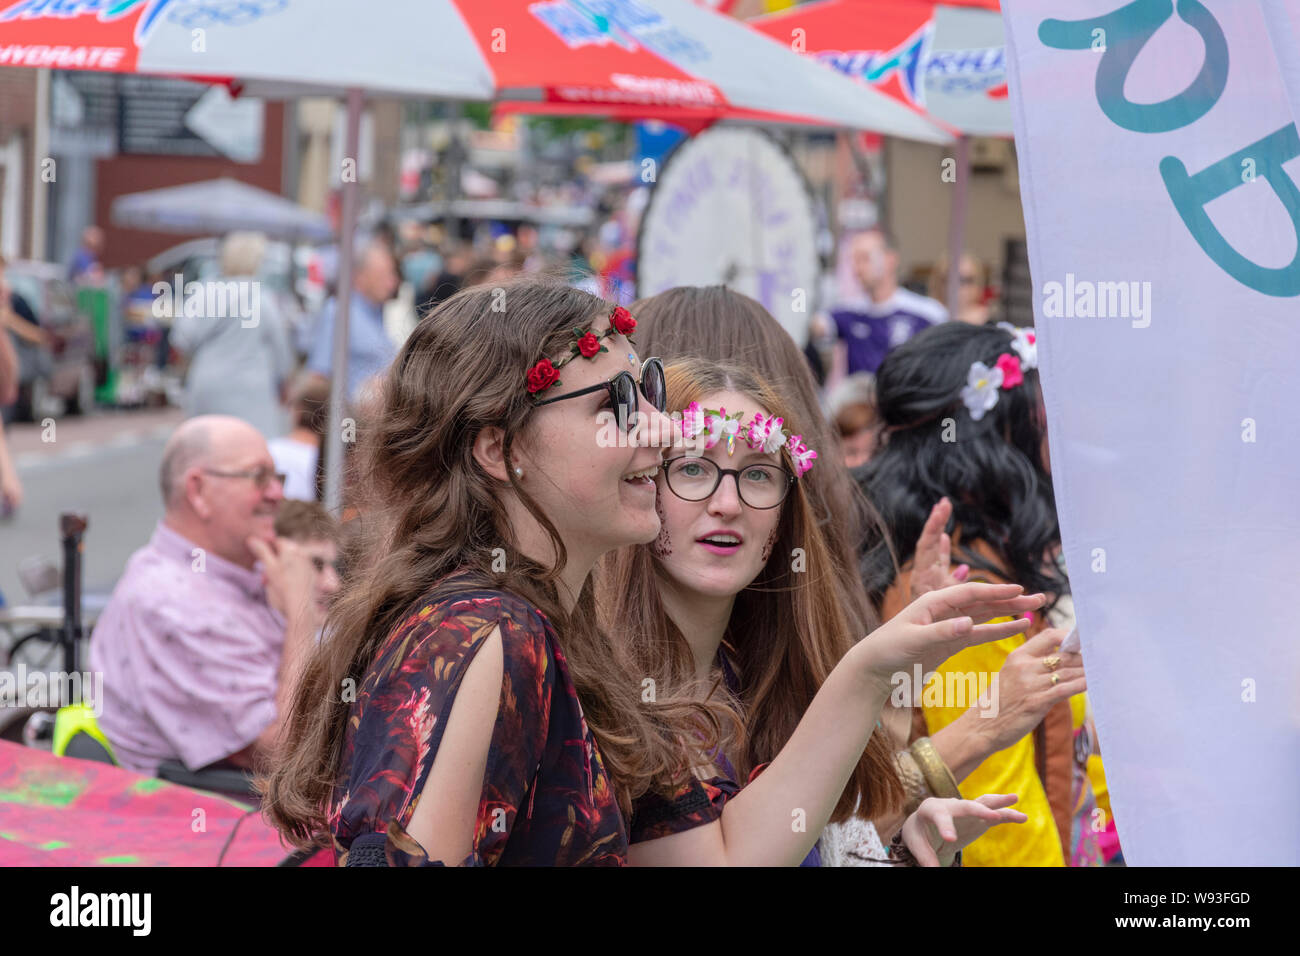 Sint Gillis Waas, Belgique, le 3 août 2019, festival de Woodstock n'oubliez pas, l'amour, la paix et la compréhension. Flower Power les filles avec des fleurs dans leurs cheveux Banque D'Images